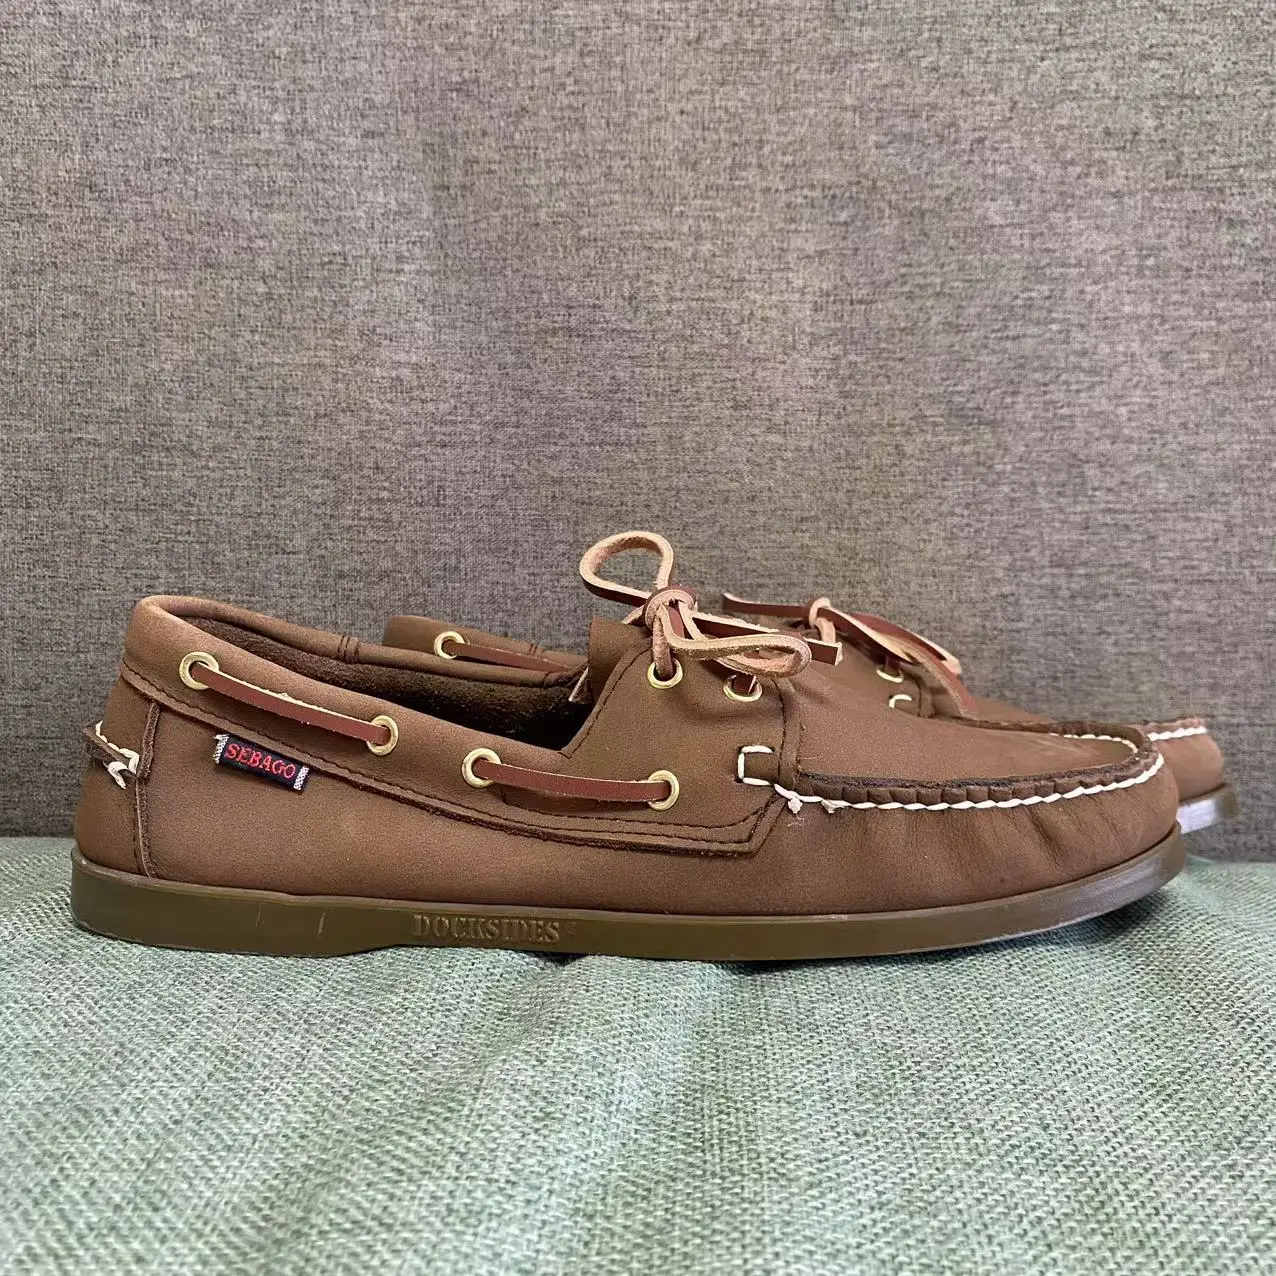 

Men Homme Authentic Sebago Docksides Shoes - Premium Leather Moc Toe Lace Up Boat Shoes 184A